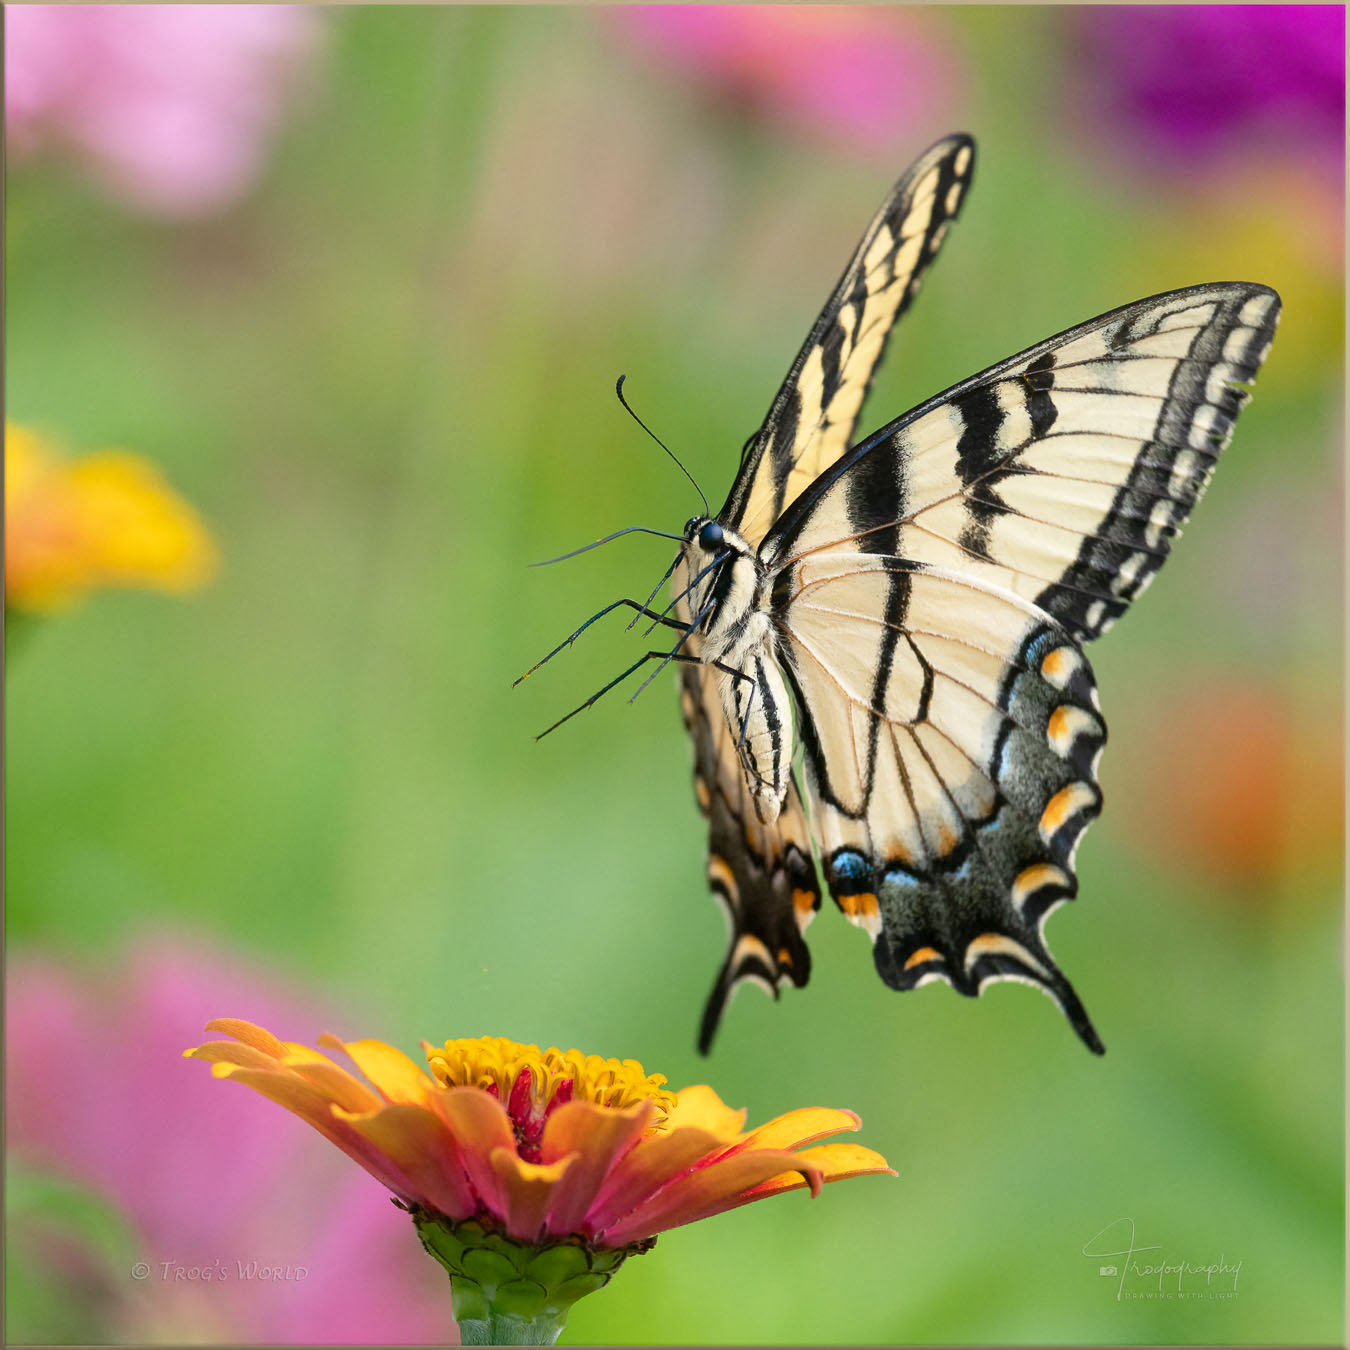 Female Eastern Tiger Swallowtail in flight